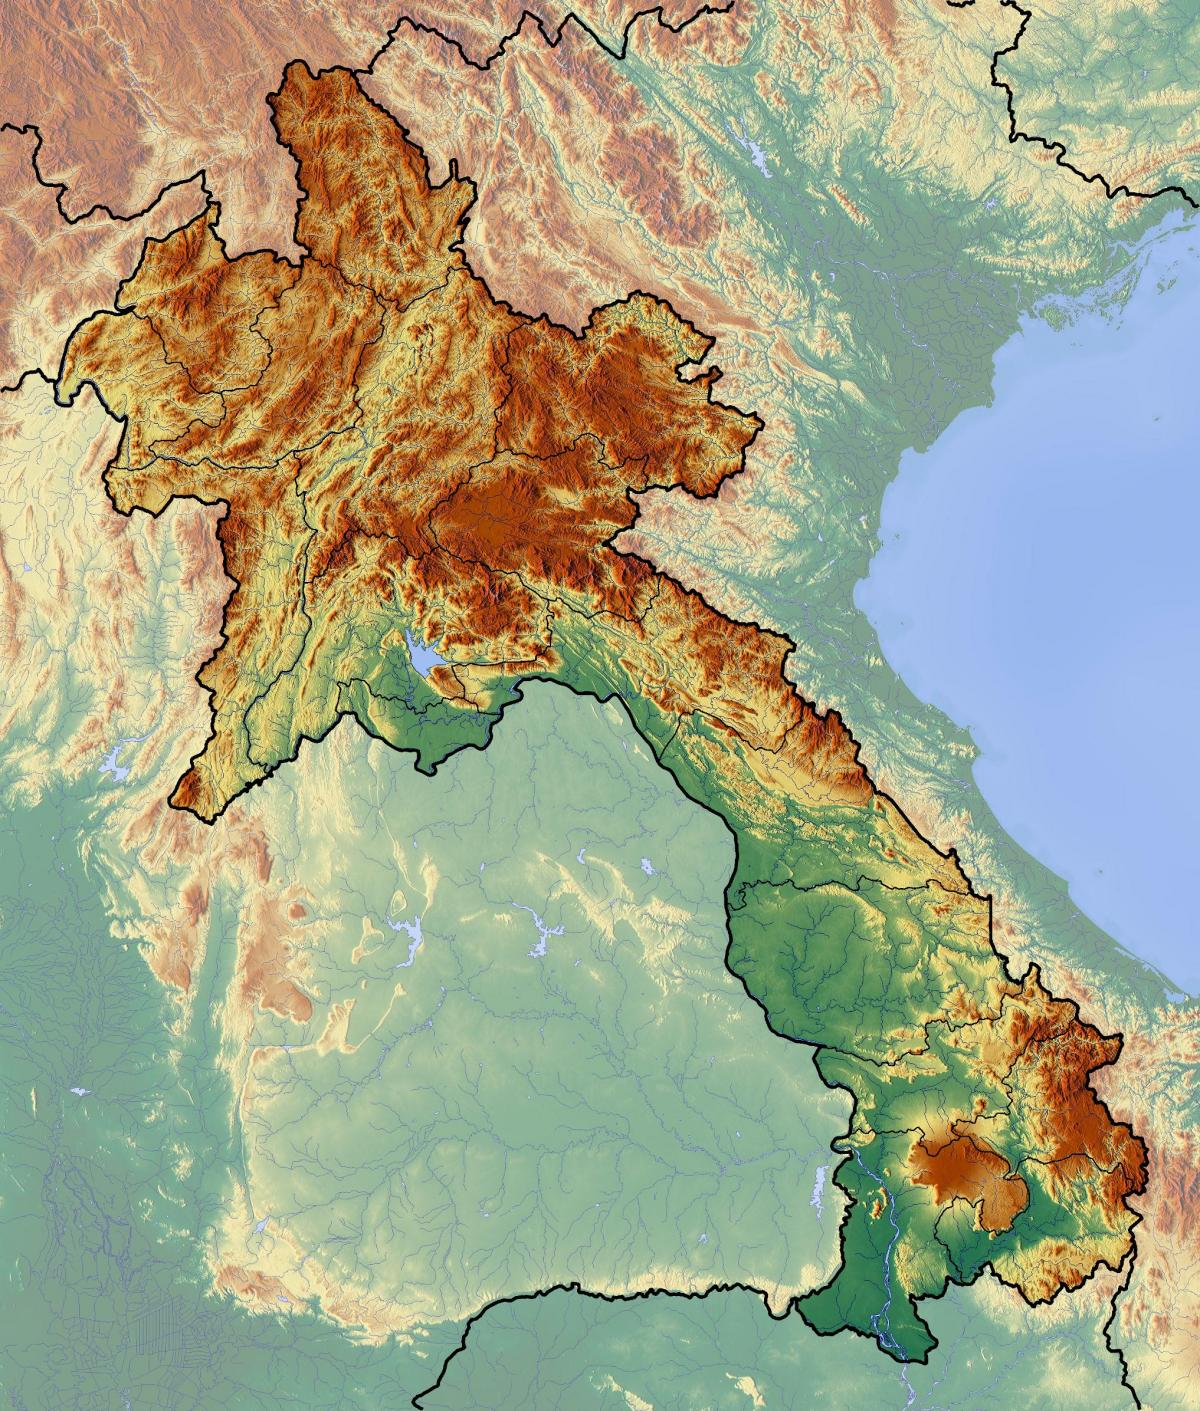 מפה של לאוס טופוגרפית